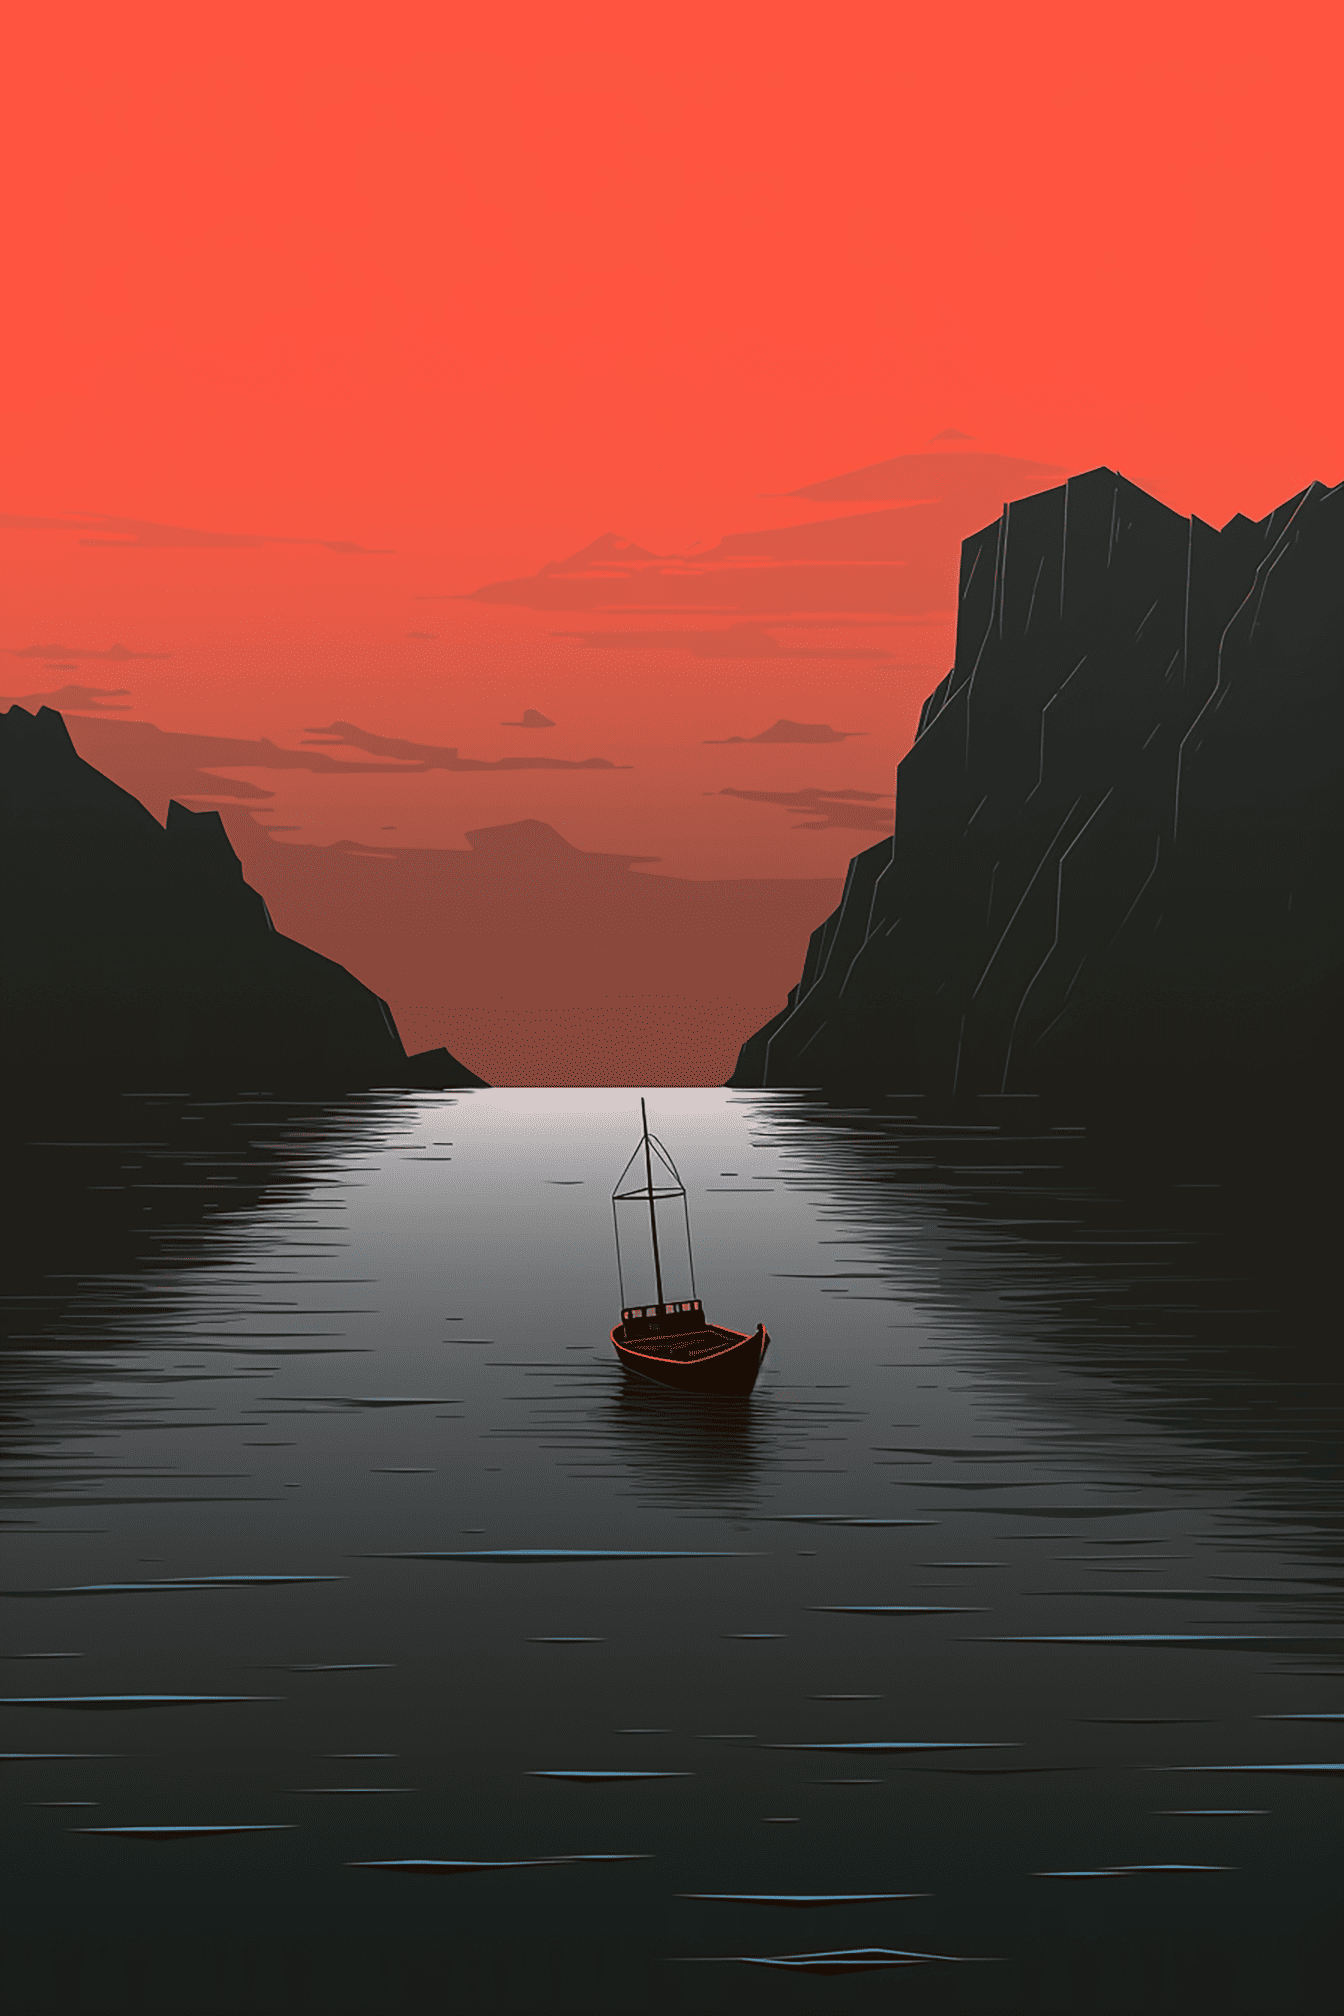 Vektorska grafika tamnocrvenog zalaska sunca u uvali sa siluetom ribarskog broda